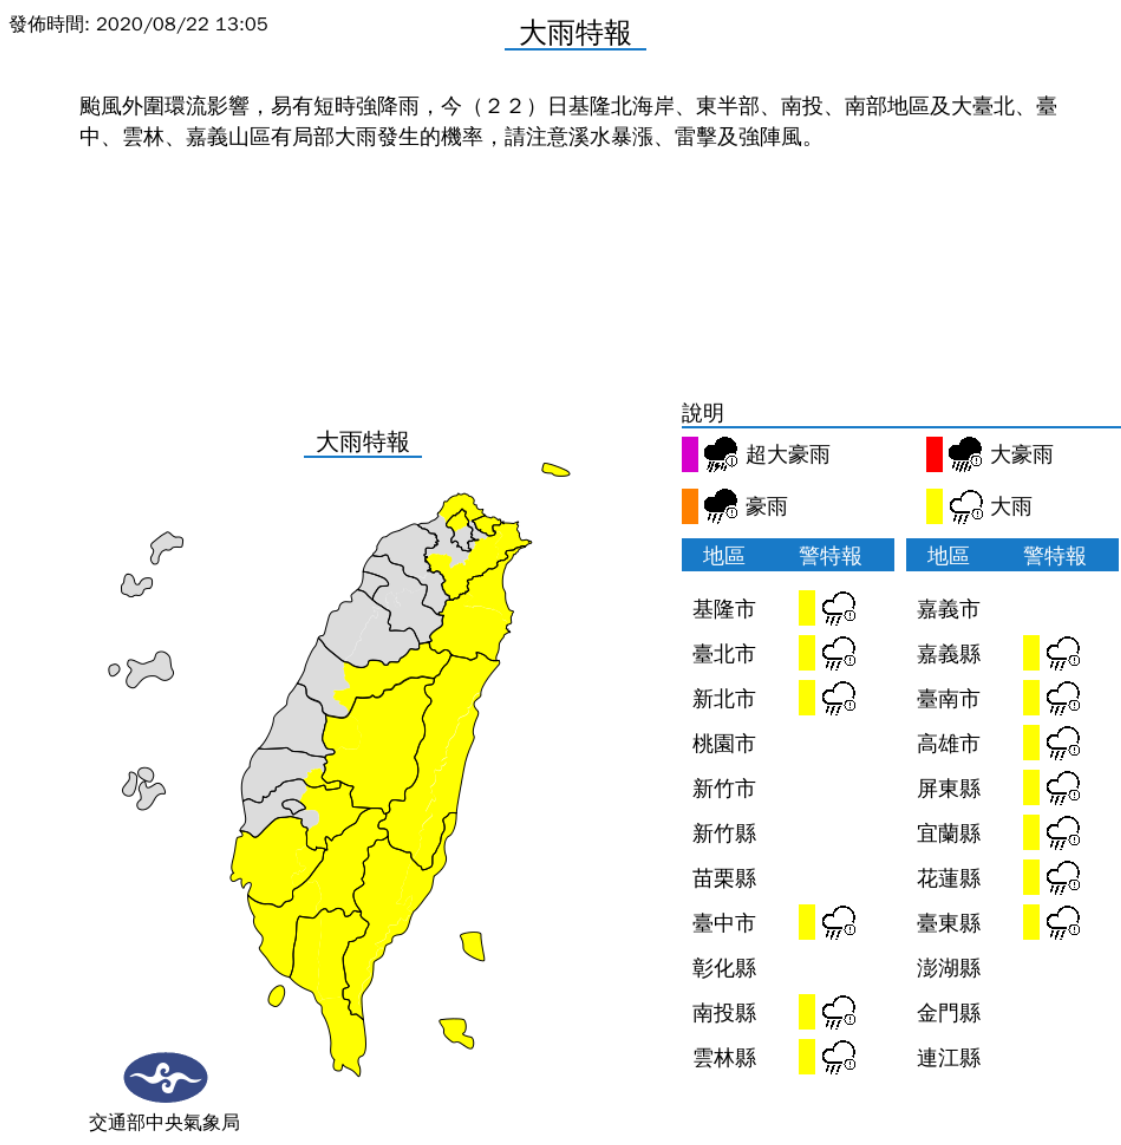 巴威颱風逼近台灣 雨區擴大到中部13縣市大雨特報 消費生活 產業 經濟日報